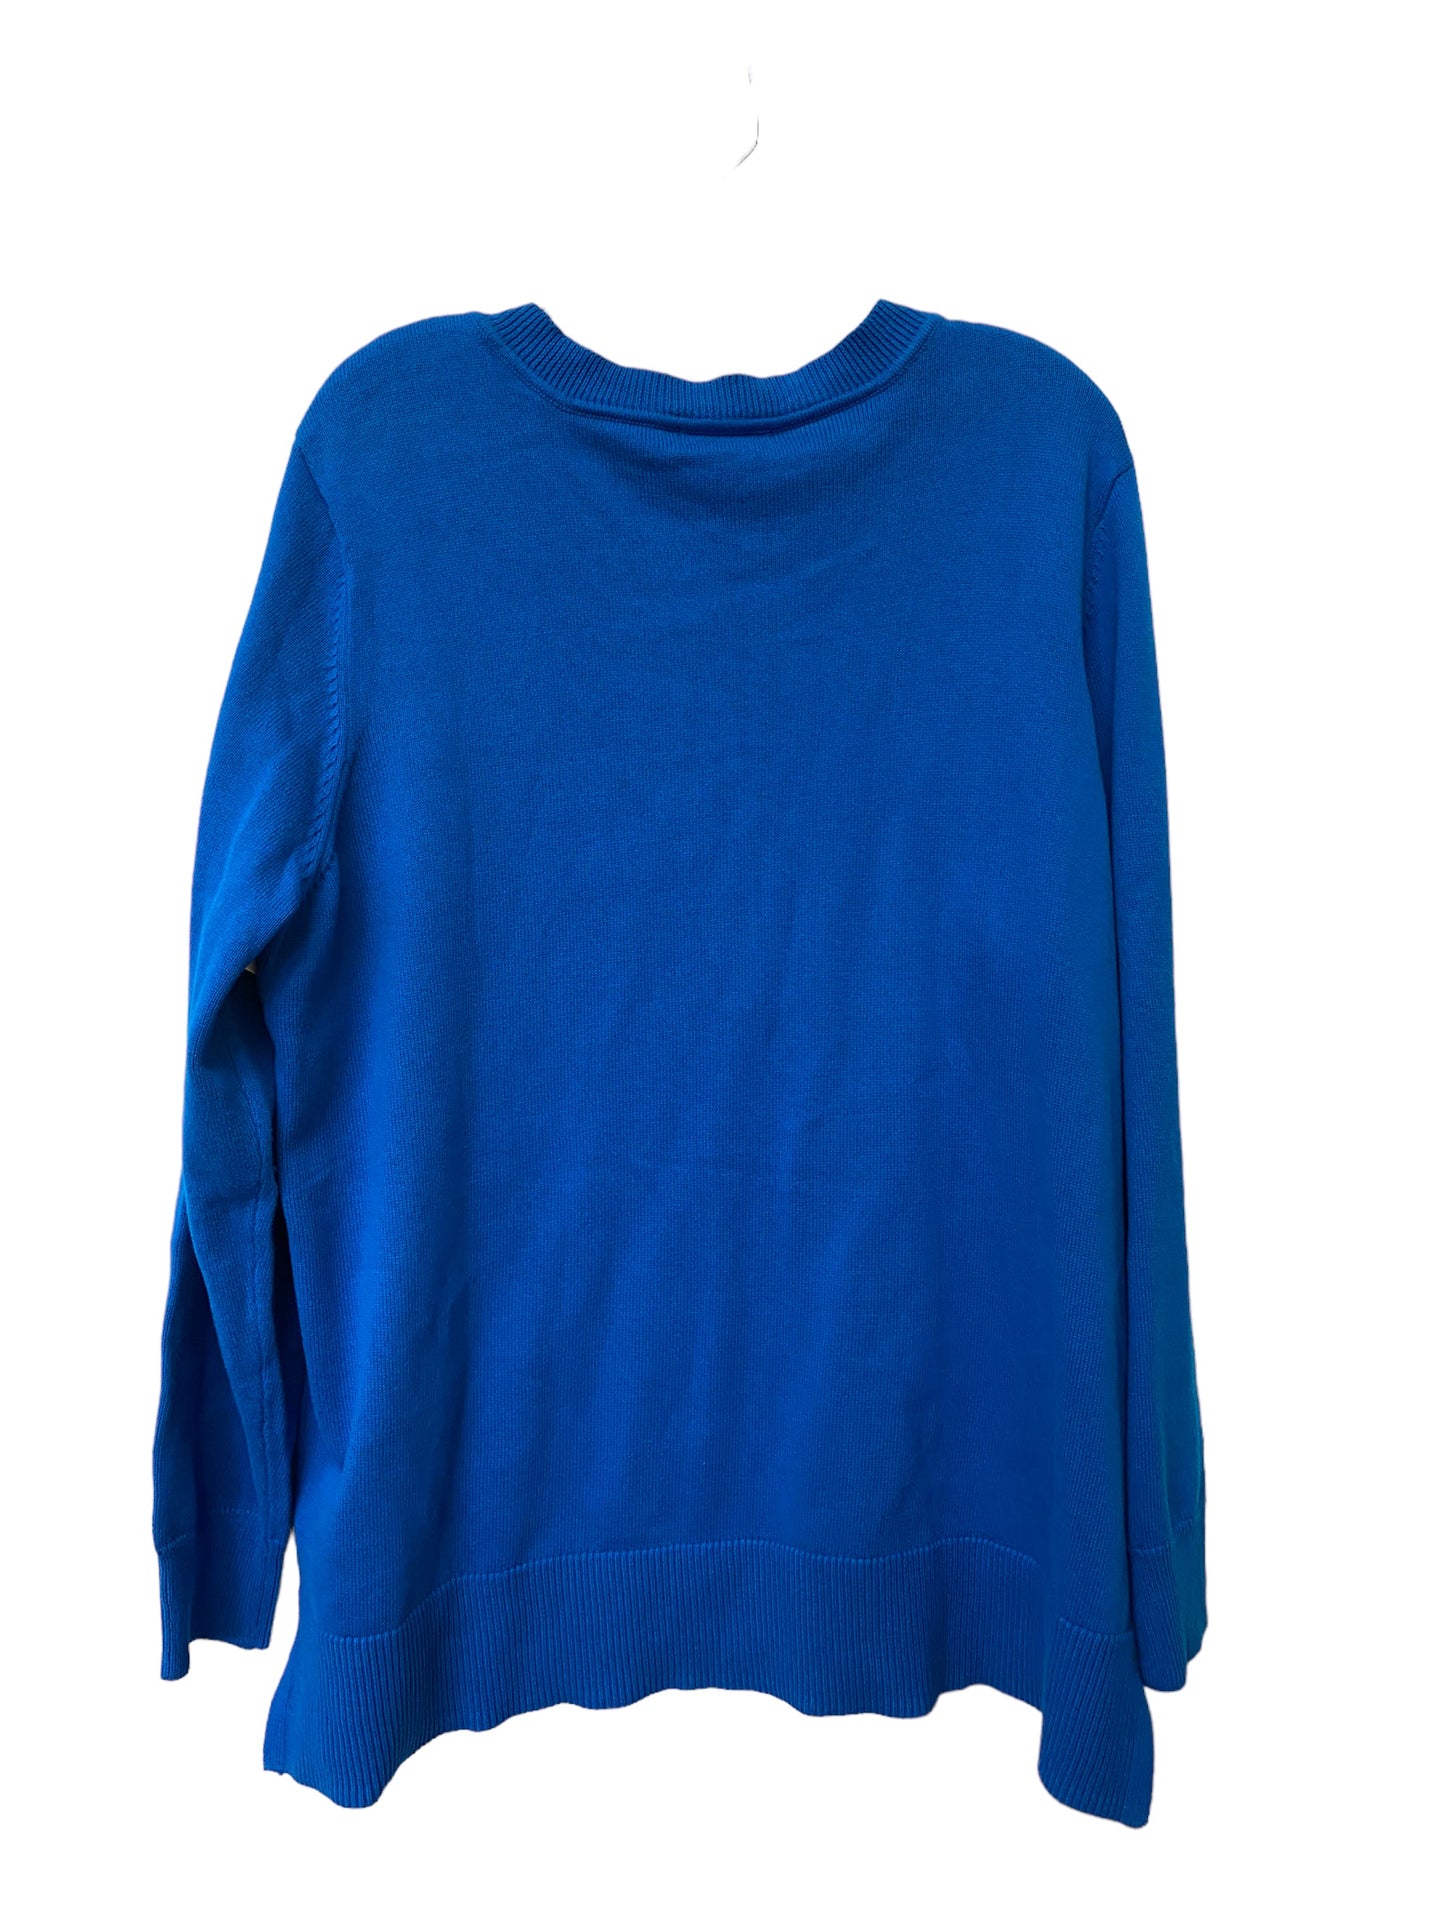 Sweater By Liz Claiborne  Size: 3x